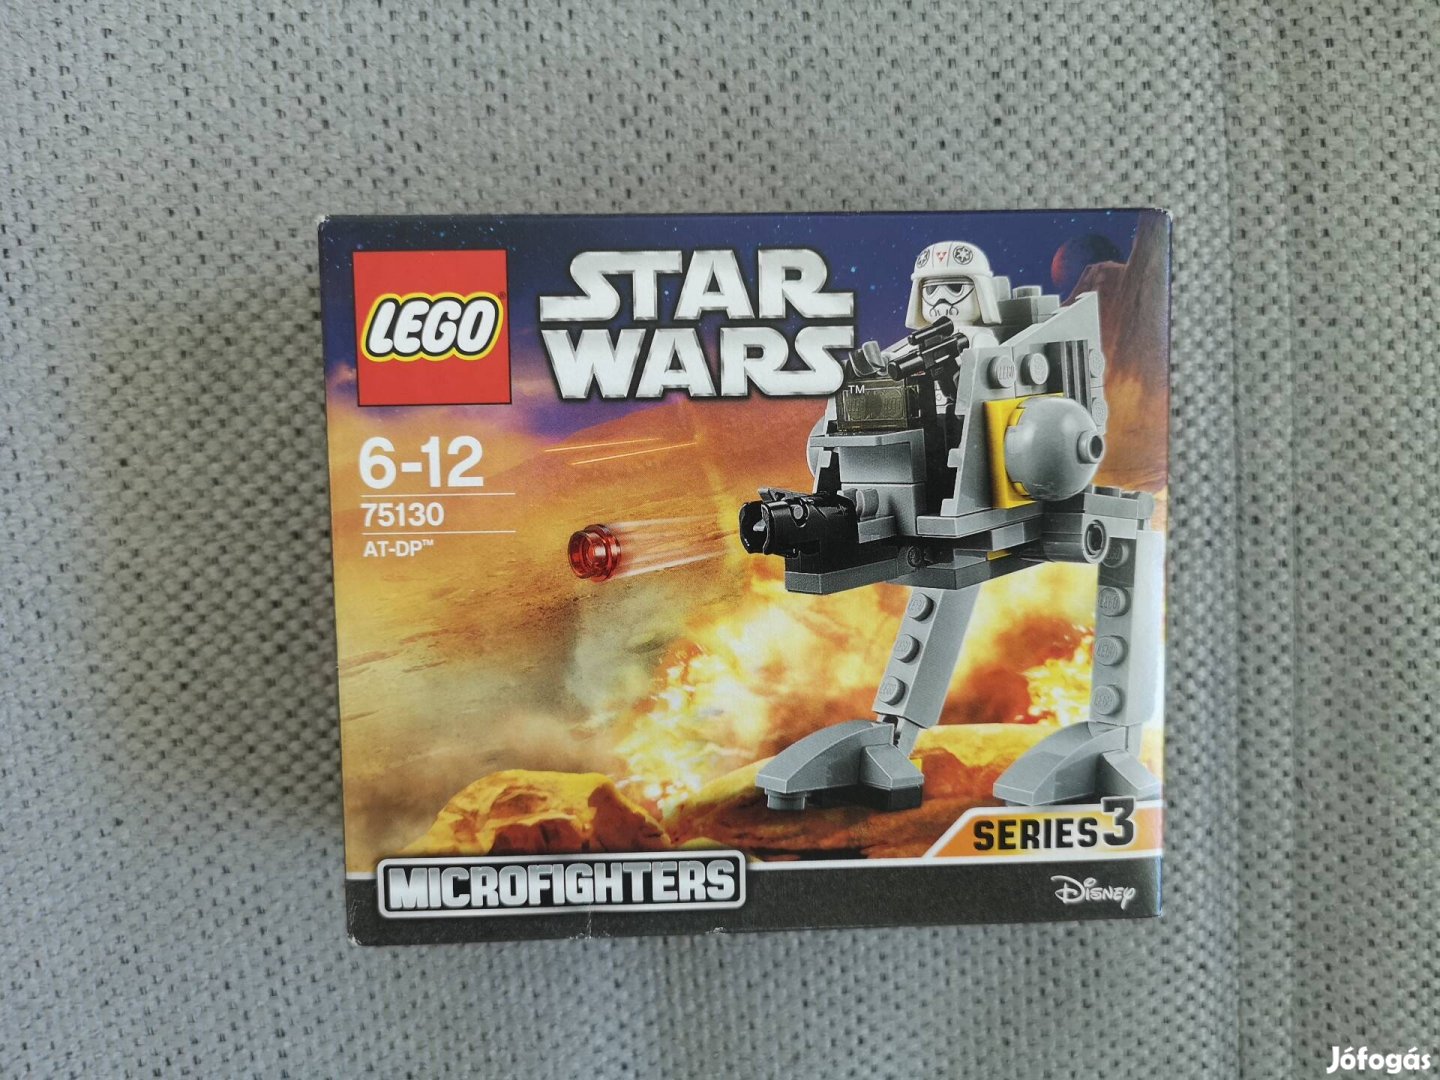 Lego Star Wars 75130 AT-DP